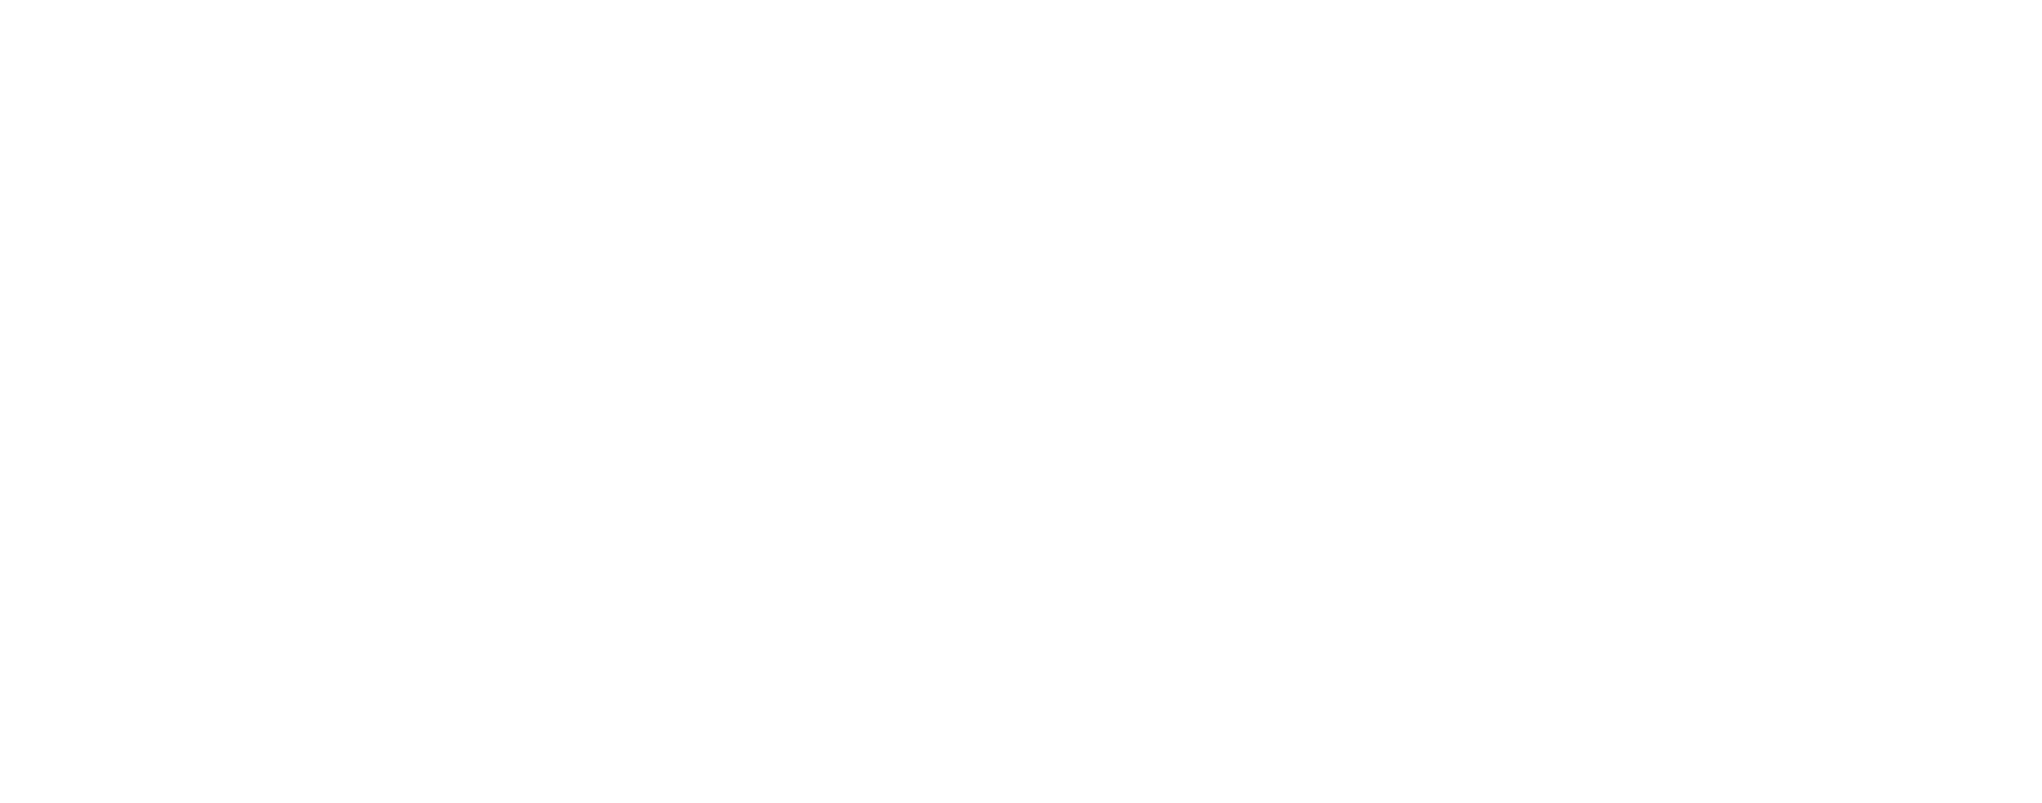 Perita Partners logo with tagline in white.